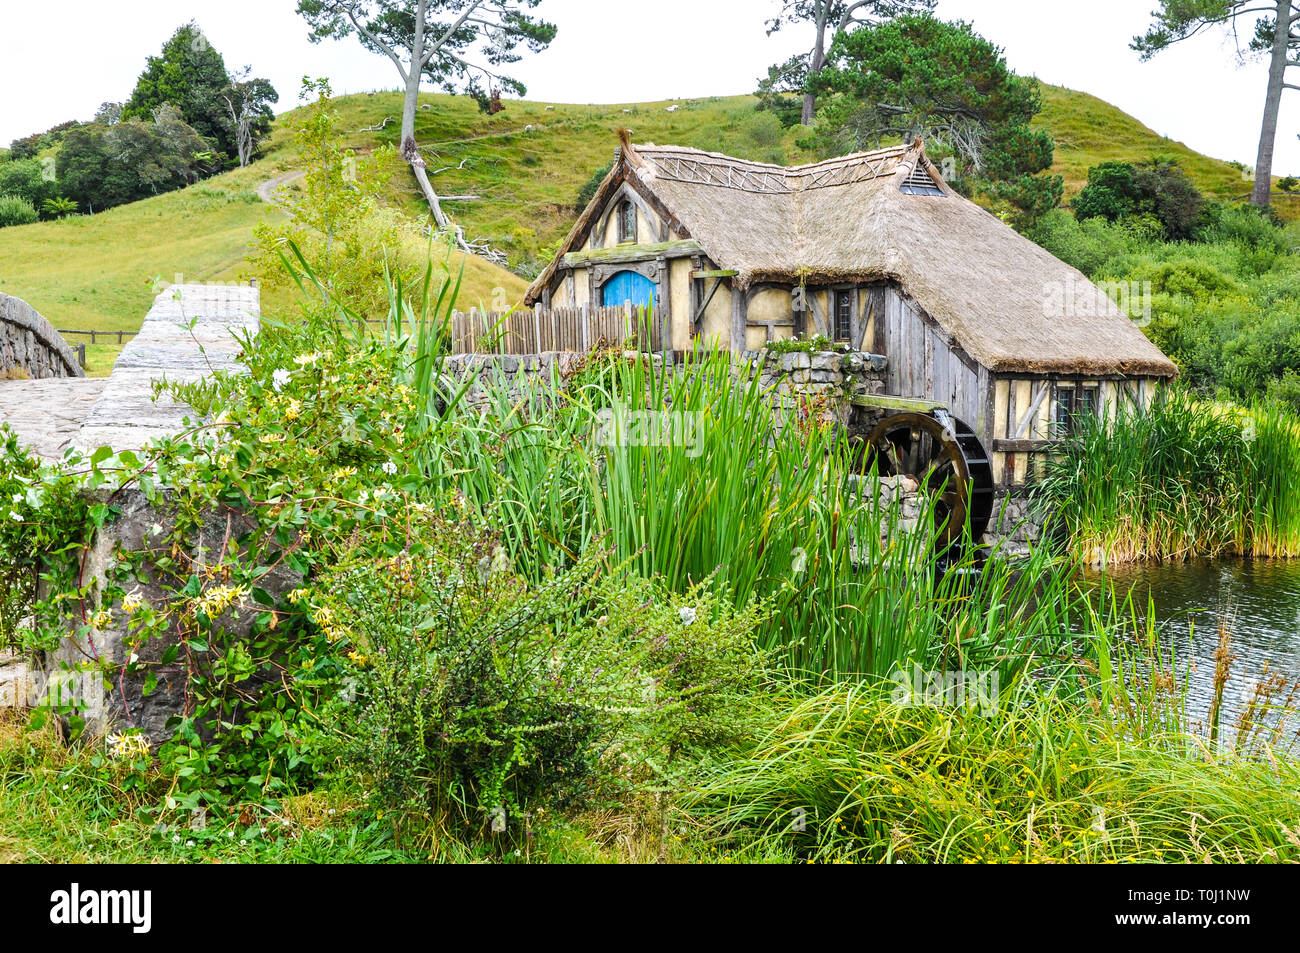 Hobbiton Movie set - Location per il Signore degli Anelli e Lo Hobbit film. Estremità del sacchetto lago, mulino. attrazione turistica nella regione di Waikato in Nuova Zelanda Foto Stock